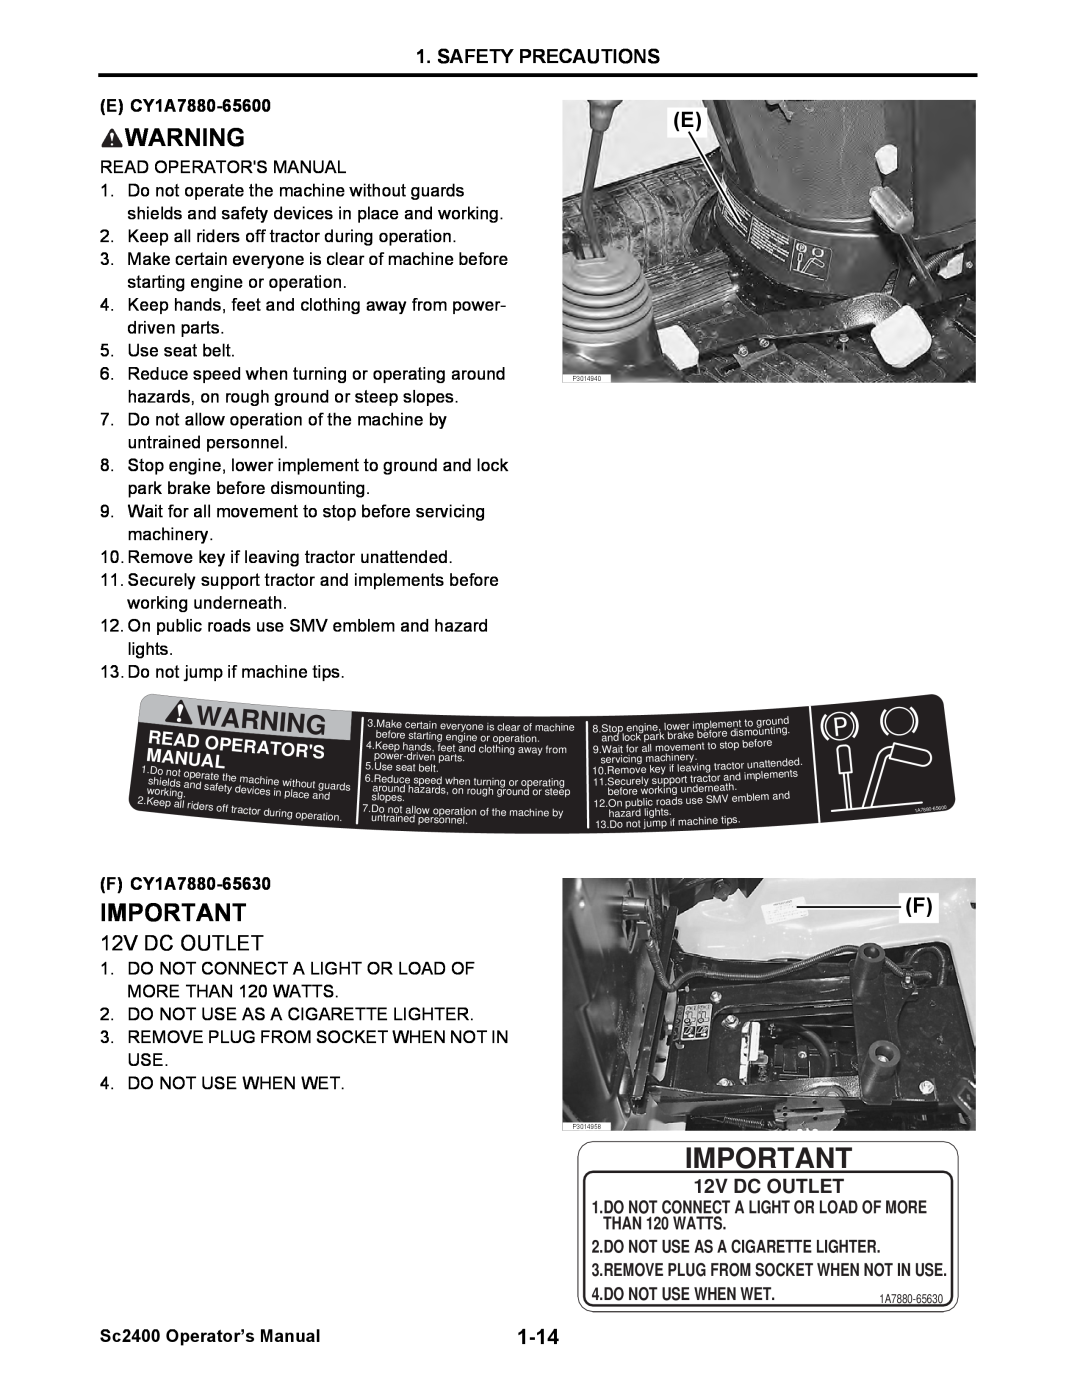 Cub Cadet SC2400 manual 12V DC OUTLET, Safety Precautions, Tors, Nual, Ad Opera, E CY1A7880-65600, F CY1A7880-65630 